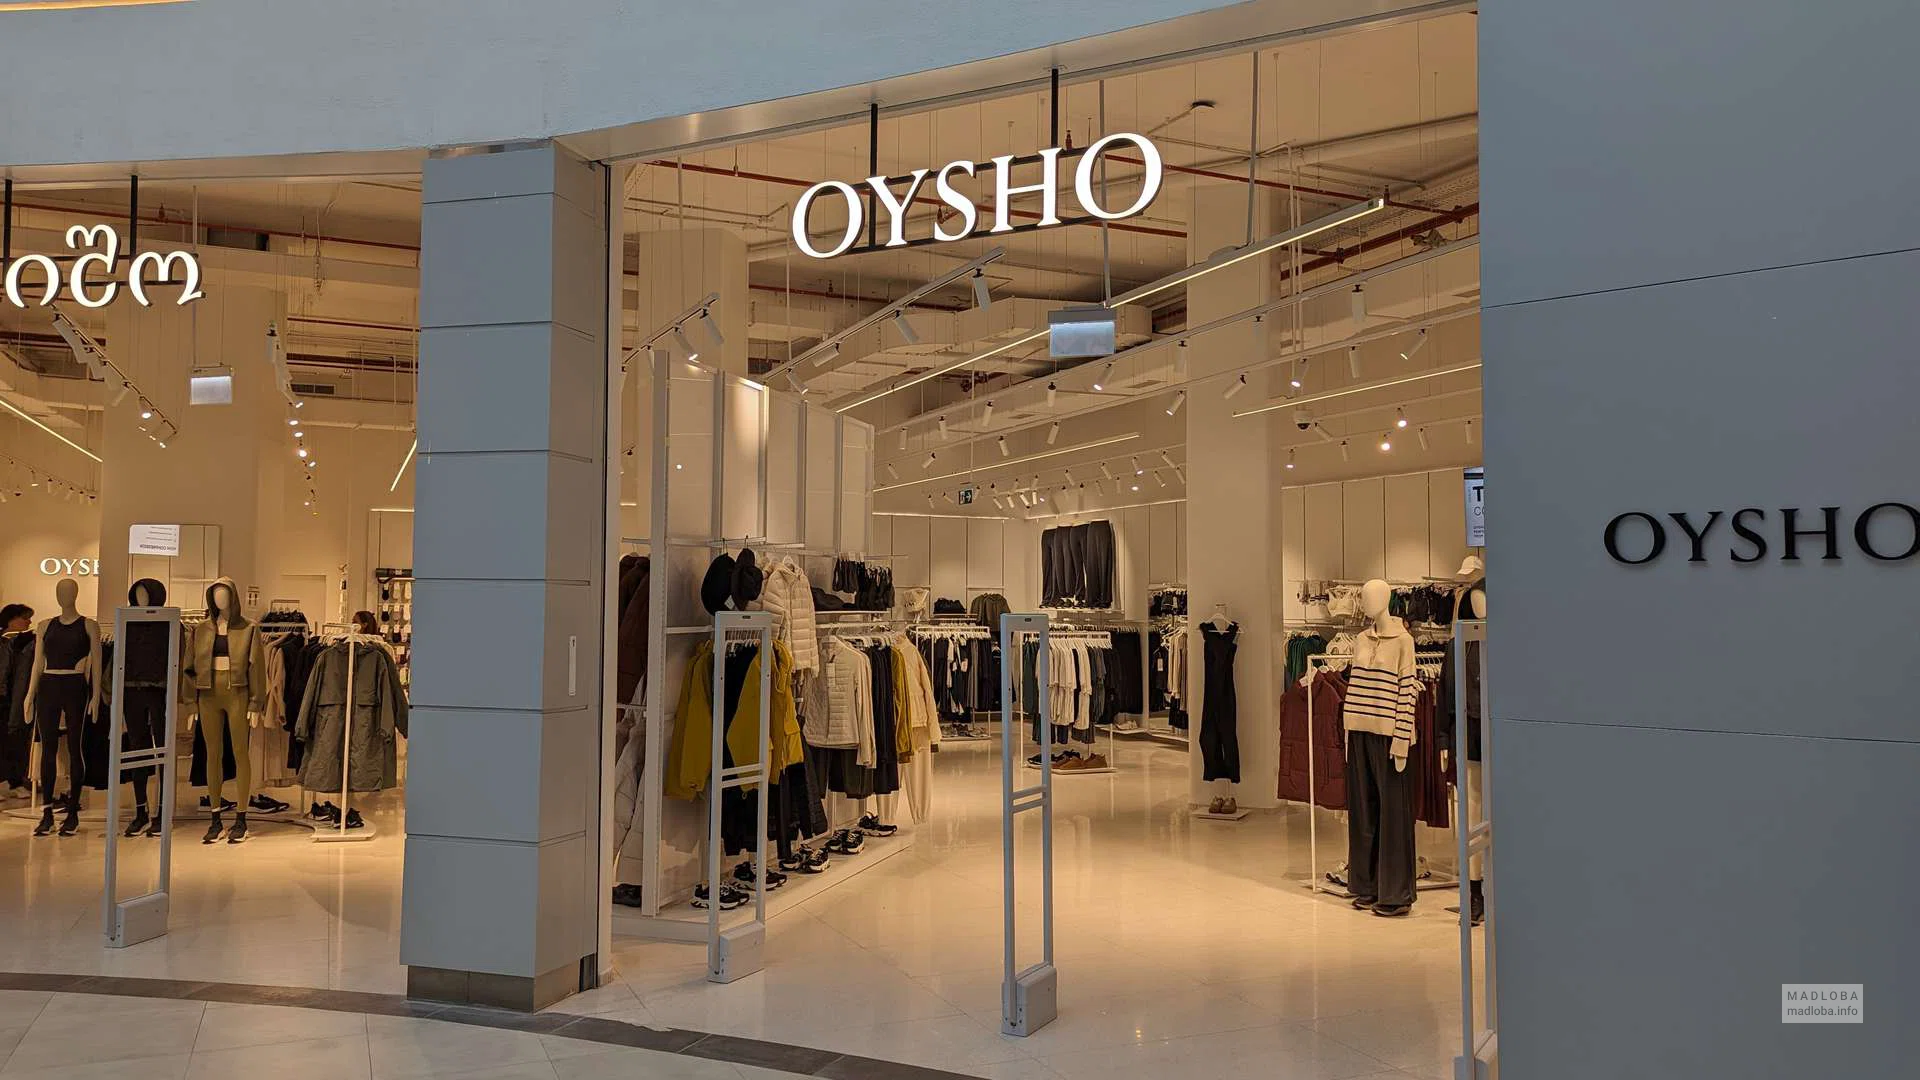 Bigbon Group - @oysho, 𝐒𝐡𝐨𝐩 𝐨𝐧𝐥𝐢𝐧𝐞 👩‍💻 www.oysho.com/mt 📲 # oysho #oyshosport